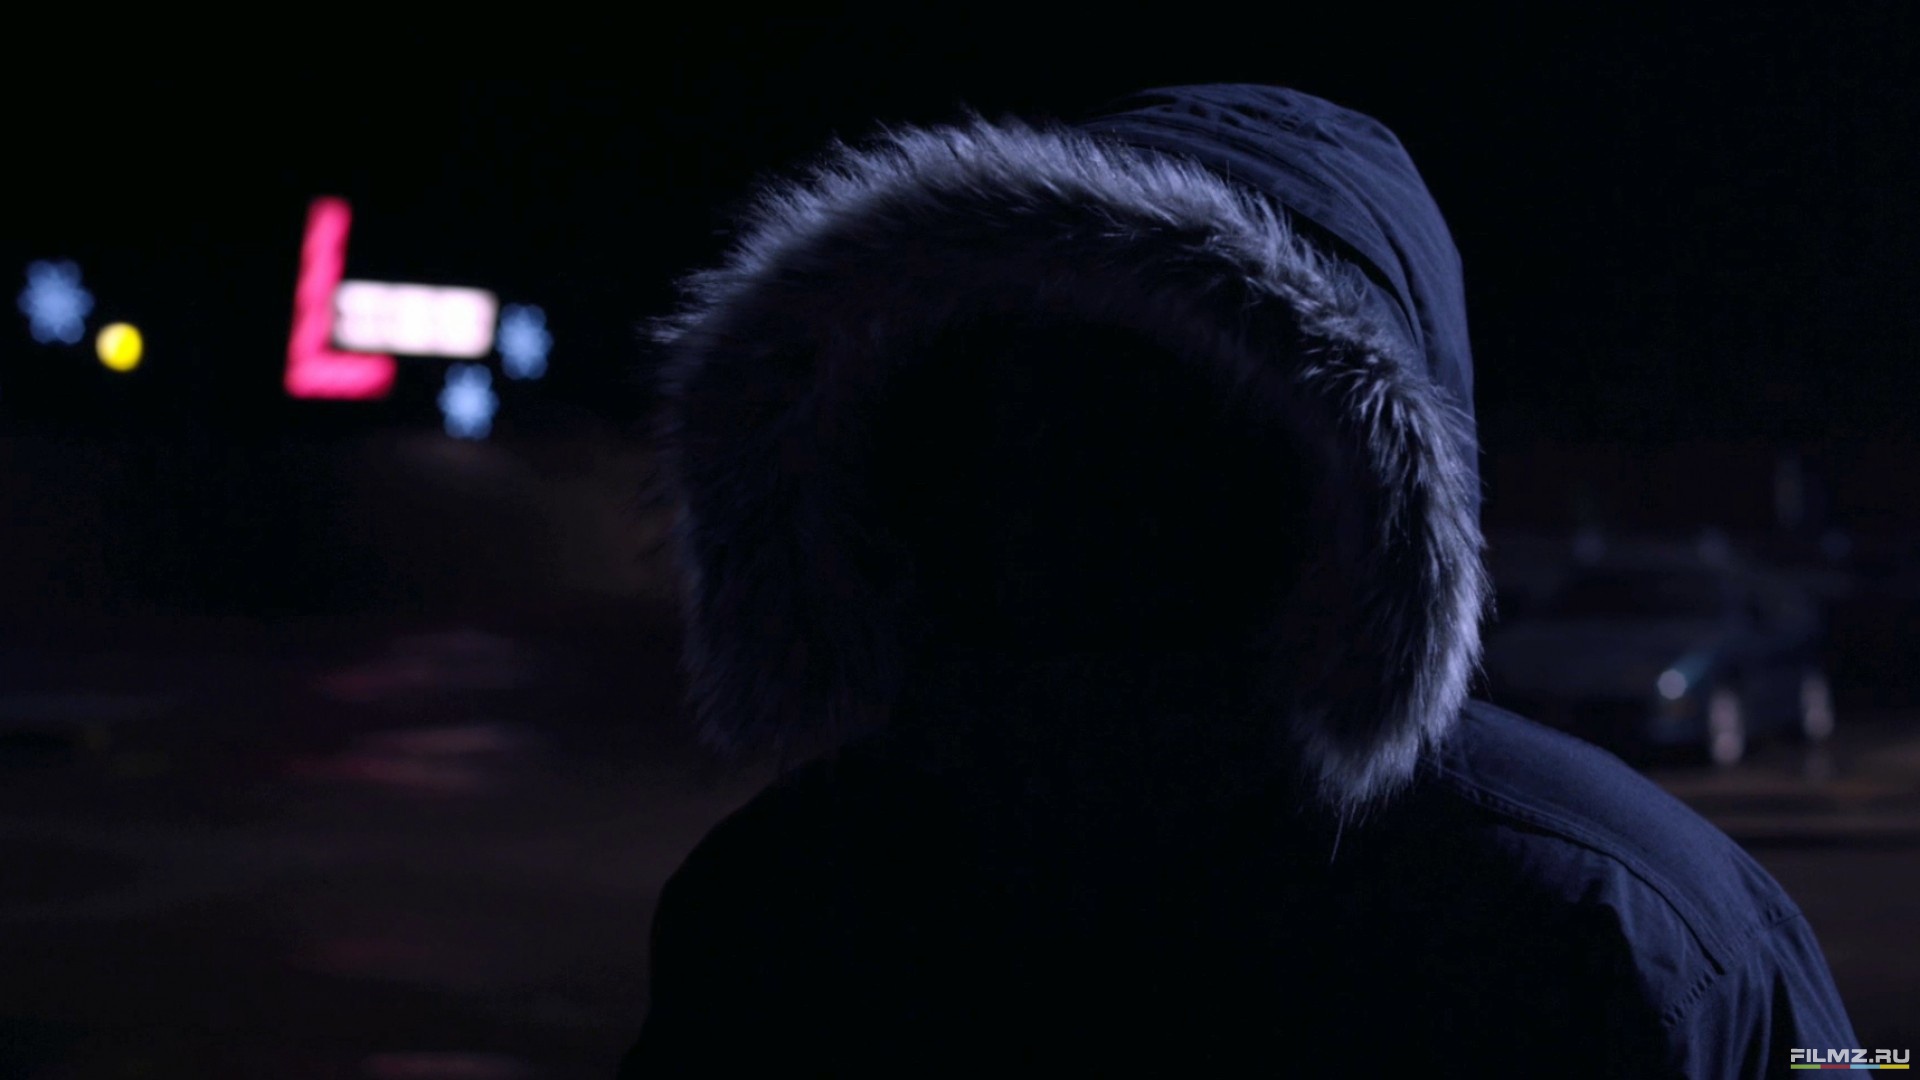 Фото пацана ночью. ATM 2012. Зима парень в капюшоне. Парень в капюшоне ночью зимой. Парень в капюшоне ночью.